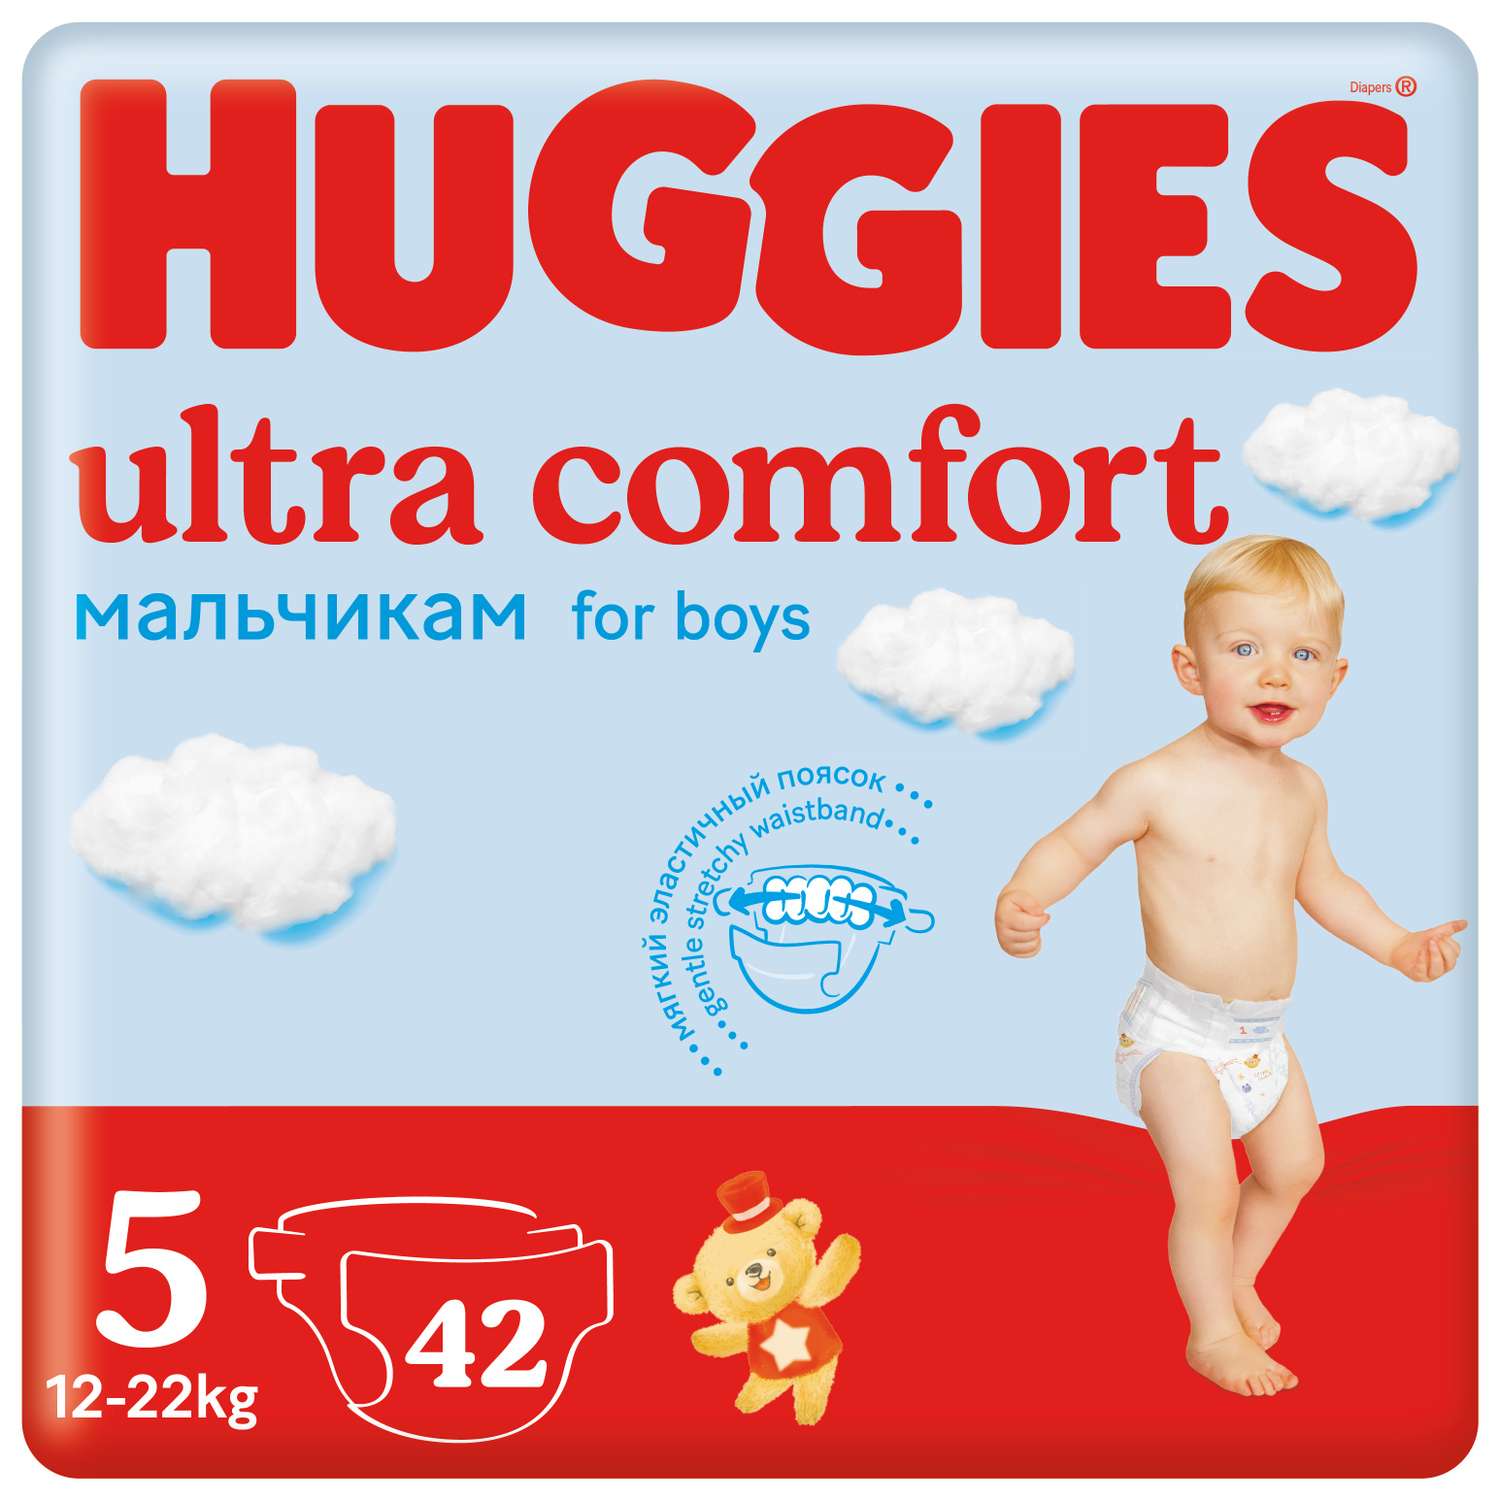 Подгузники Huggies Ultra Comfort для мальчиков 5 12-22кг 42 шт - фото 1